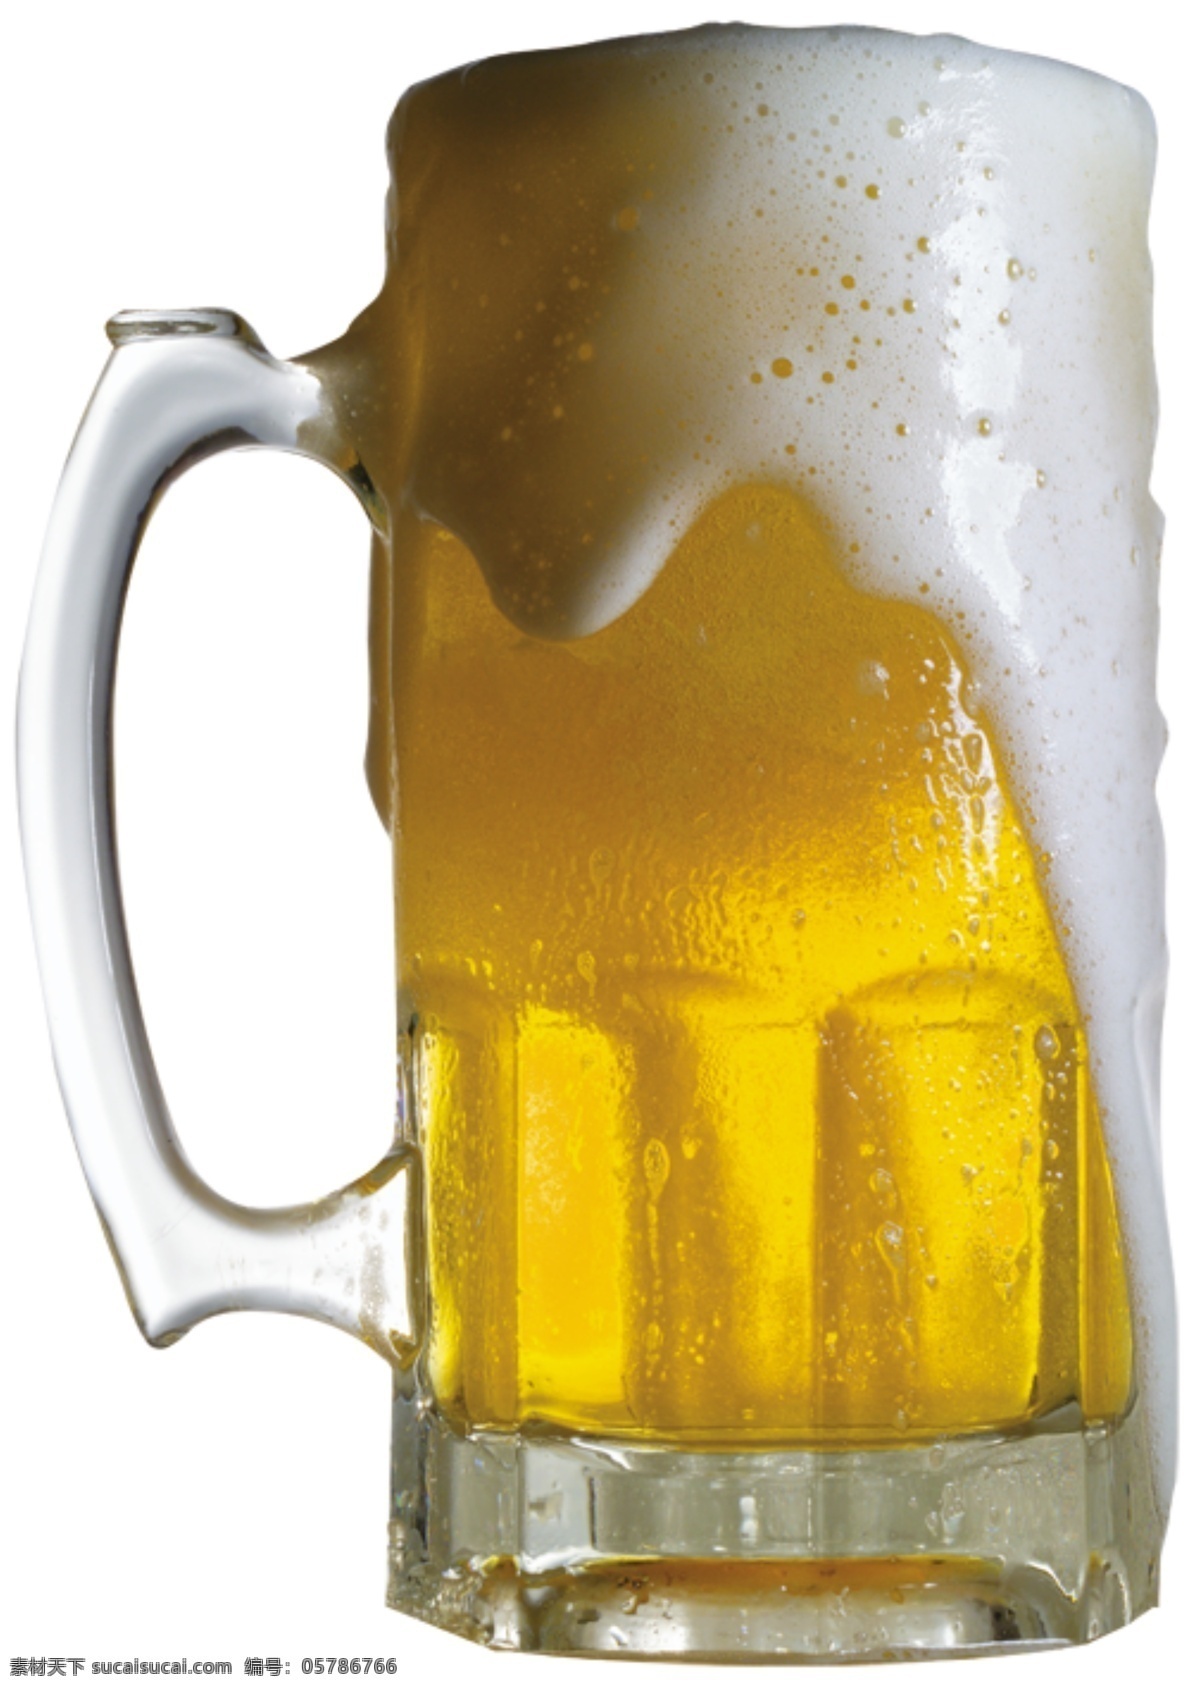 喷出的啤酒 模版下载 啤酒 啤酒杯 泡沫 源文件